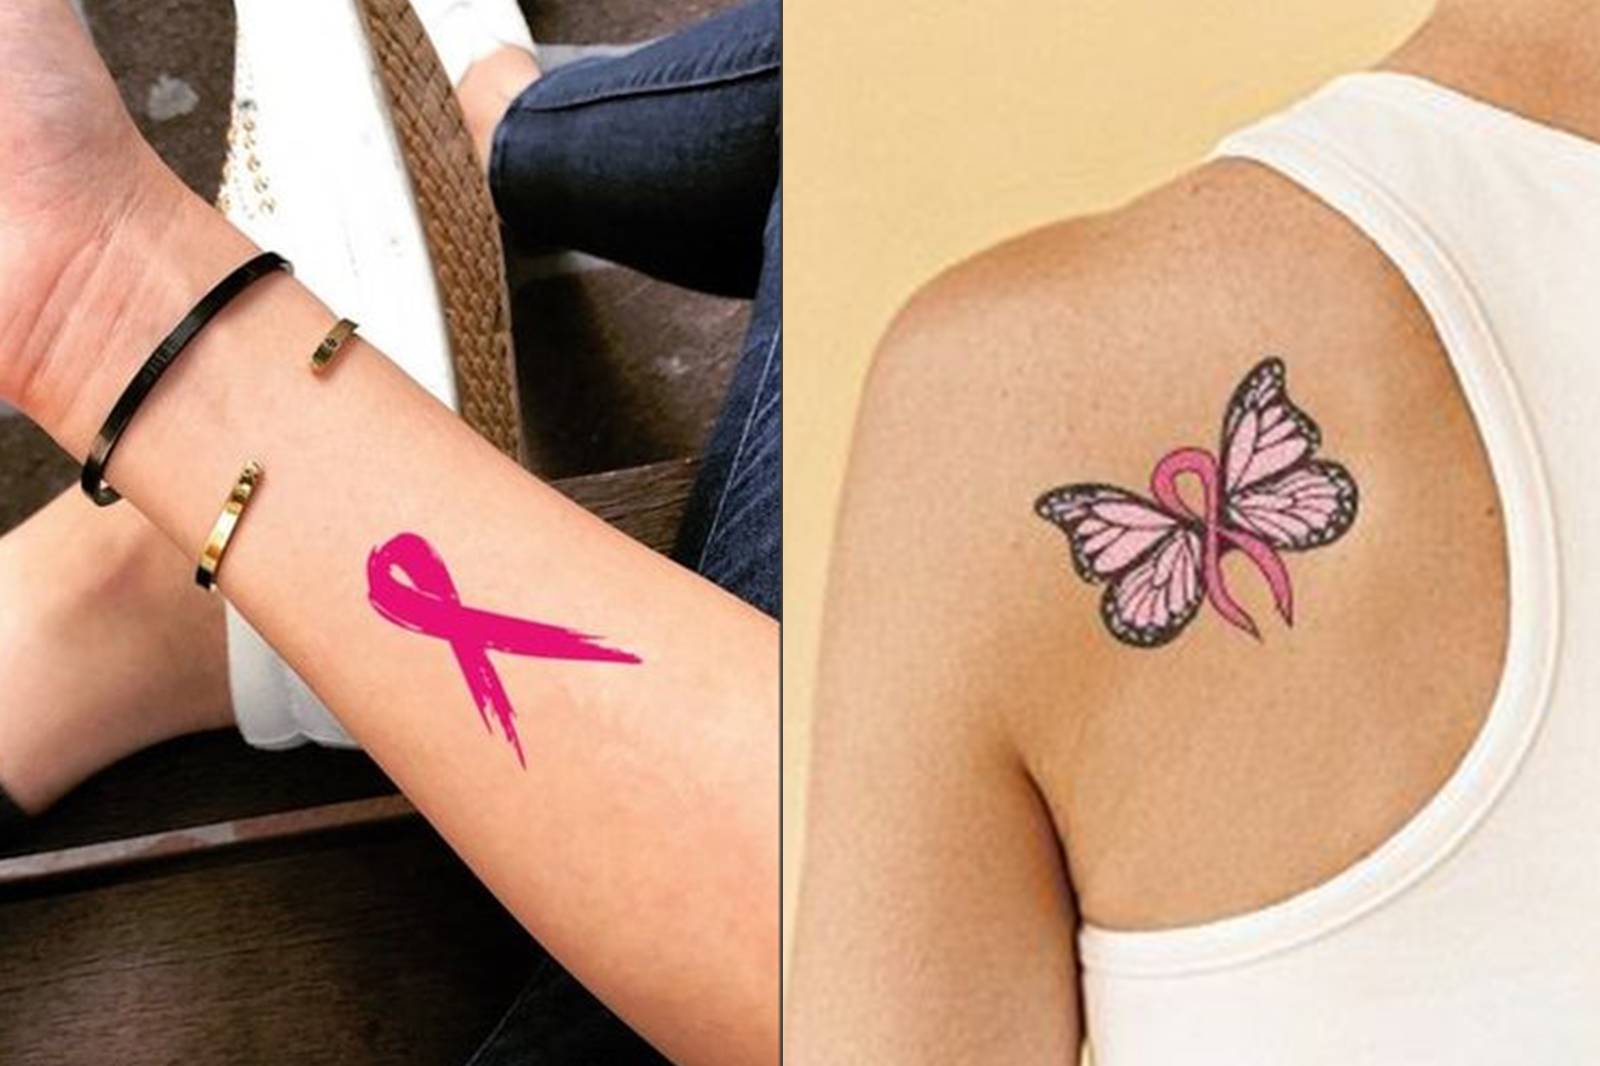 Tatuajes del simbolo del cancer de mama